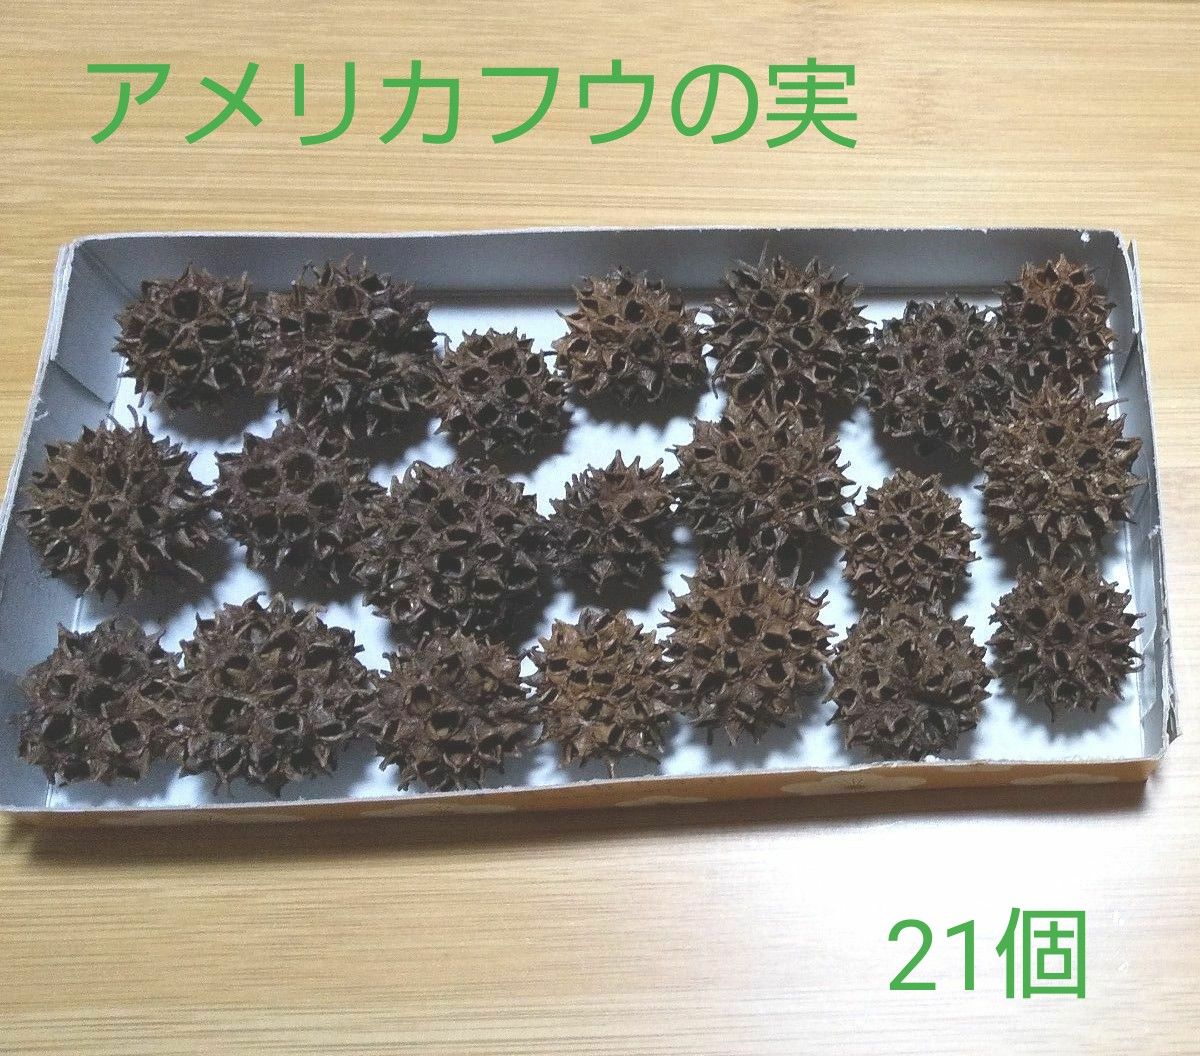 【B】ハンドメイド アメリカフウの実 モミジバフウの実 木の実 熱湯消毒済み ドライフラワー